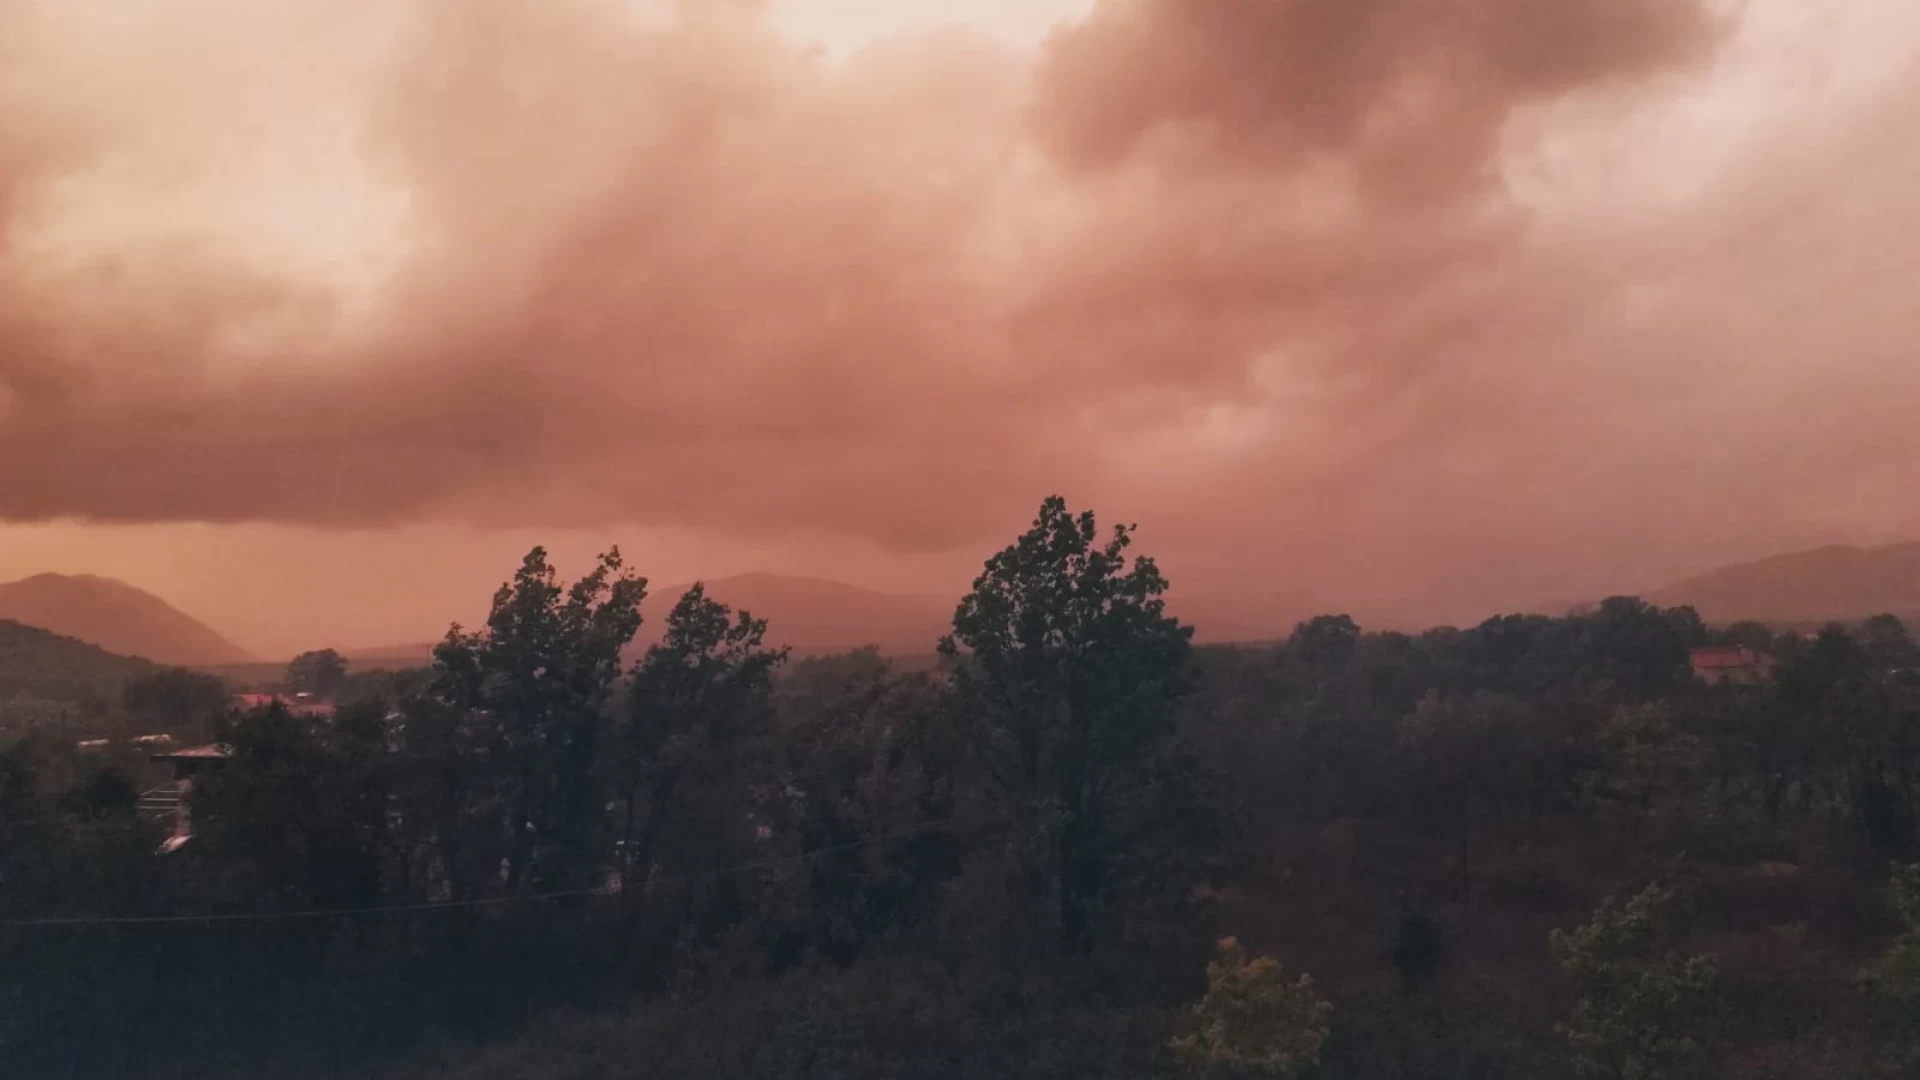 Cronaca: il fenomeno del "Cielo Rosa" inonda la provincia di Isernia. In atto veri e propri nubifragi.